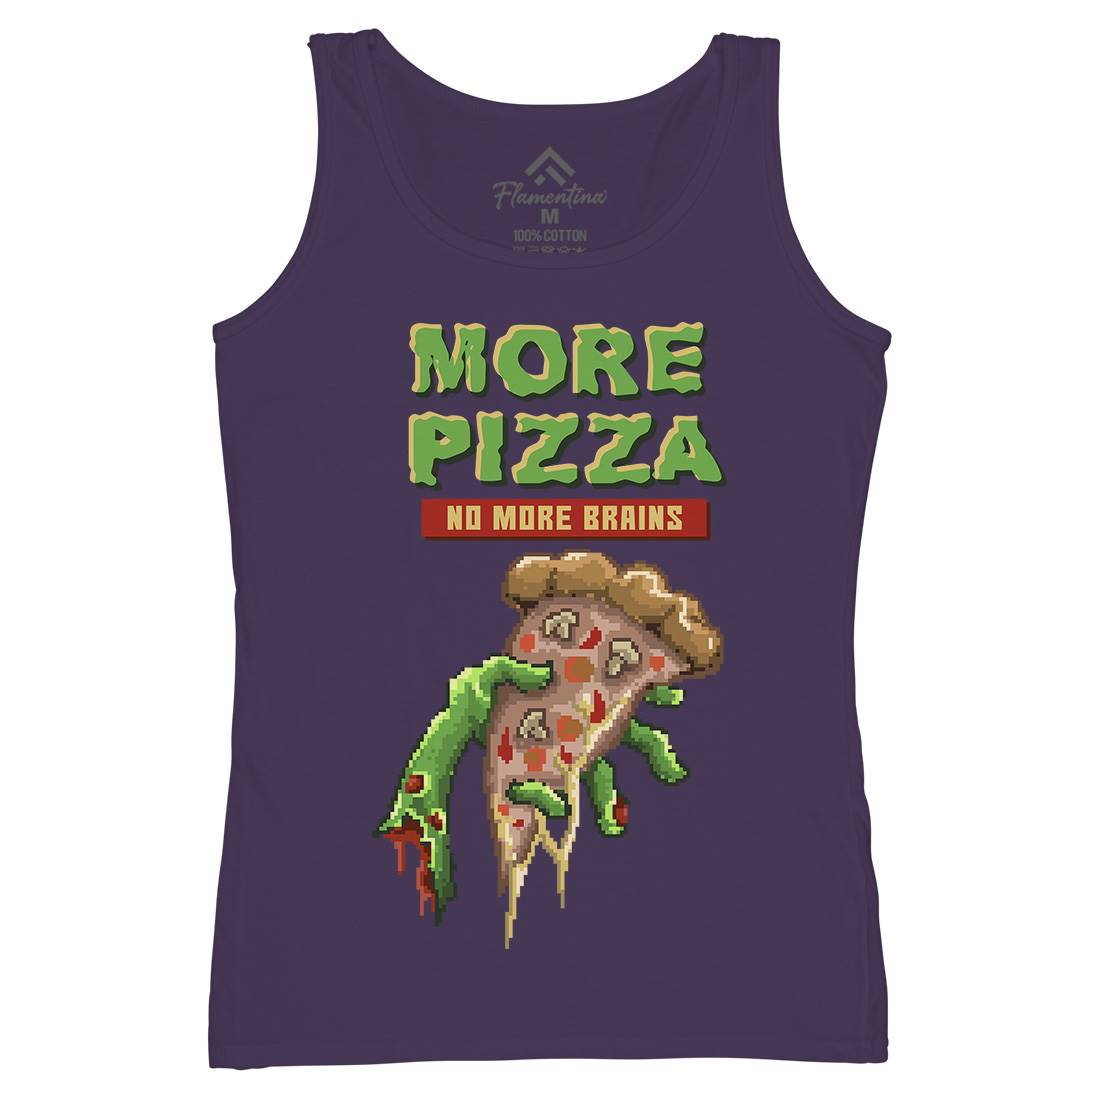 Zombie Pizza Womens Organic Tank Top Vest Food B982